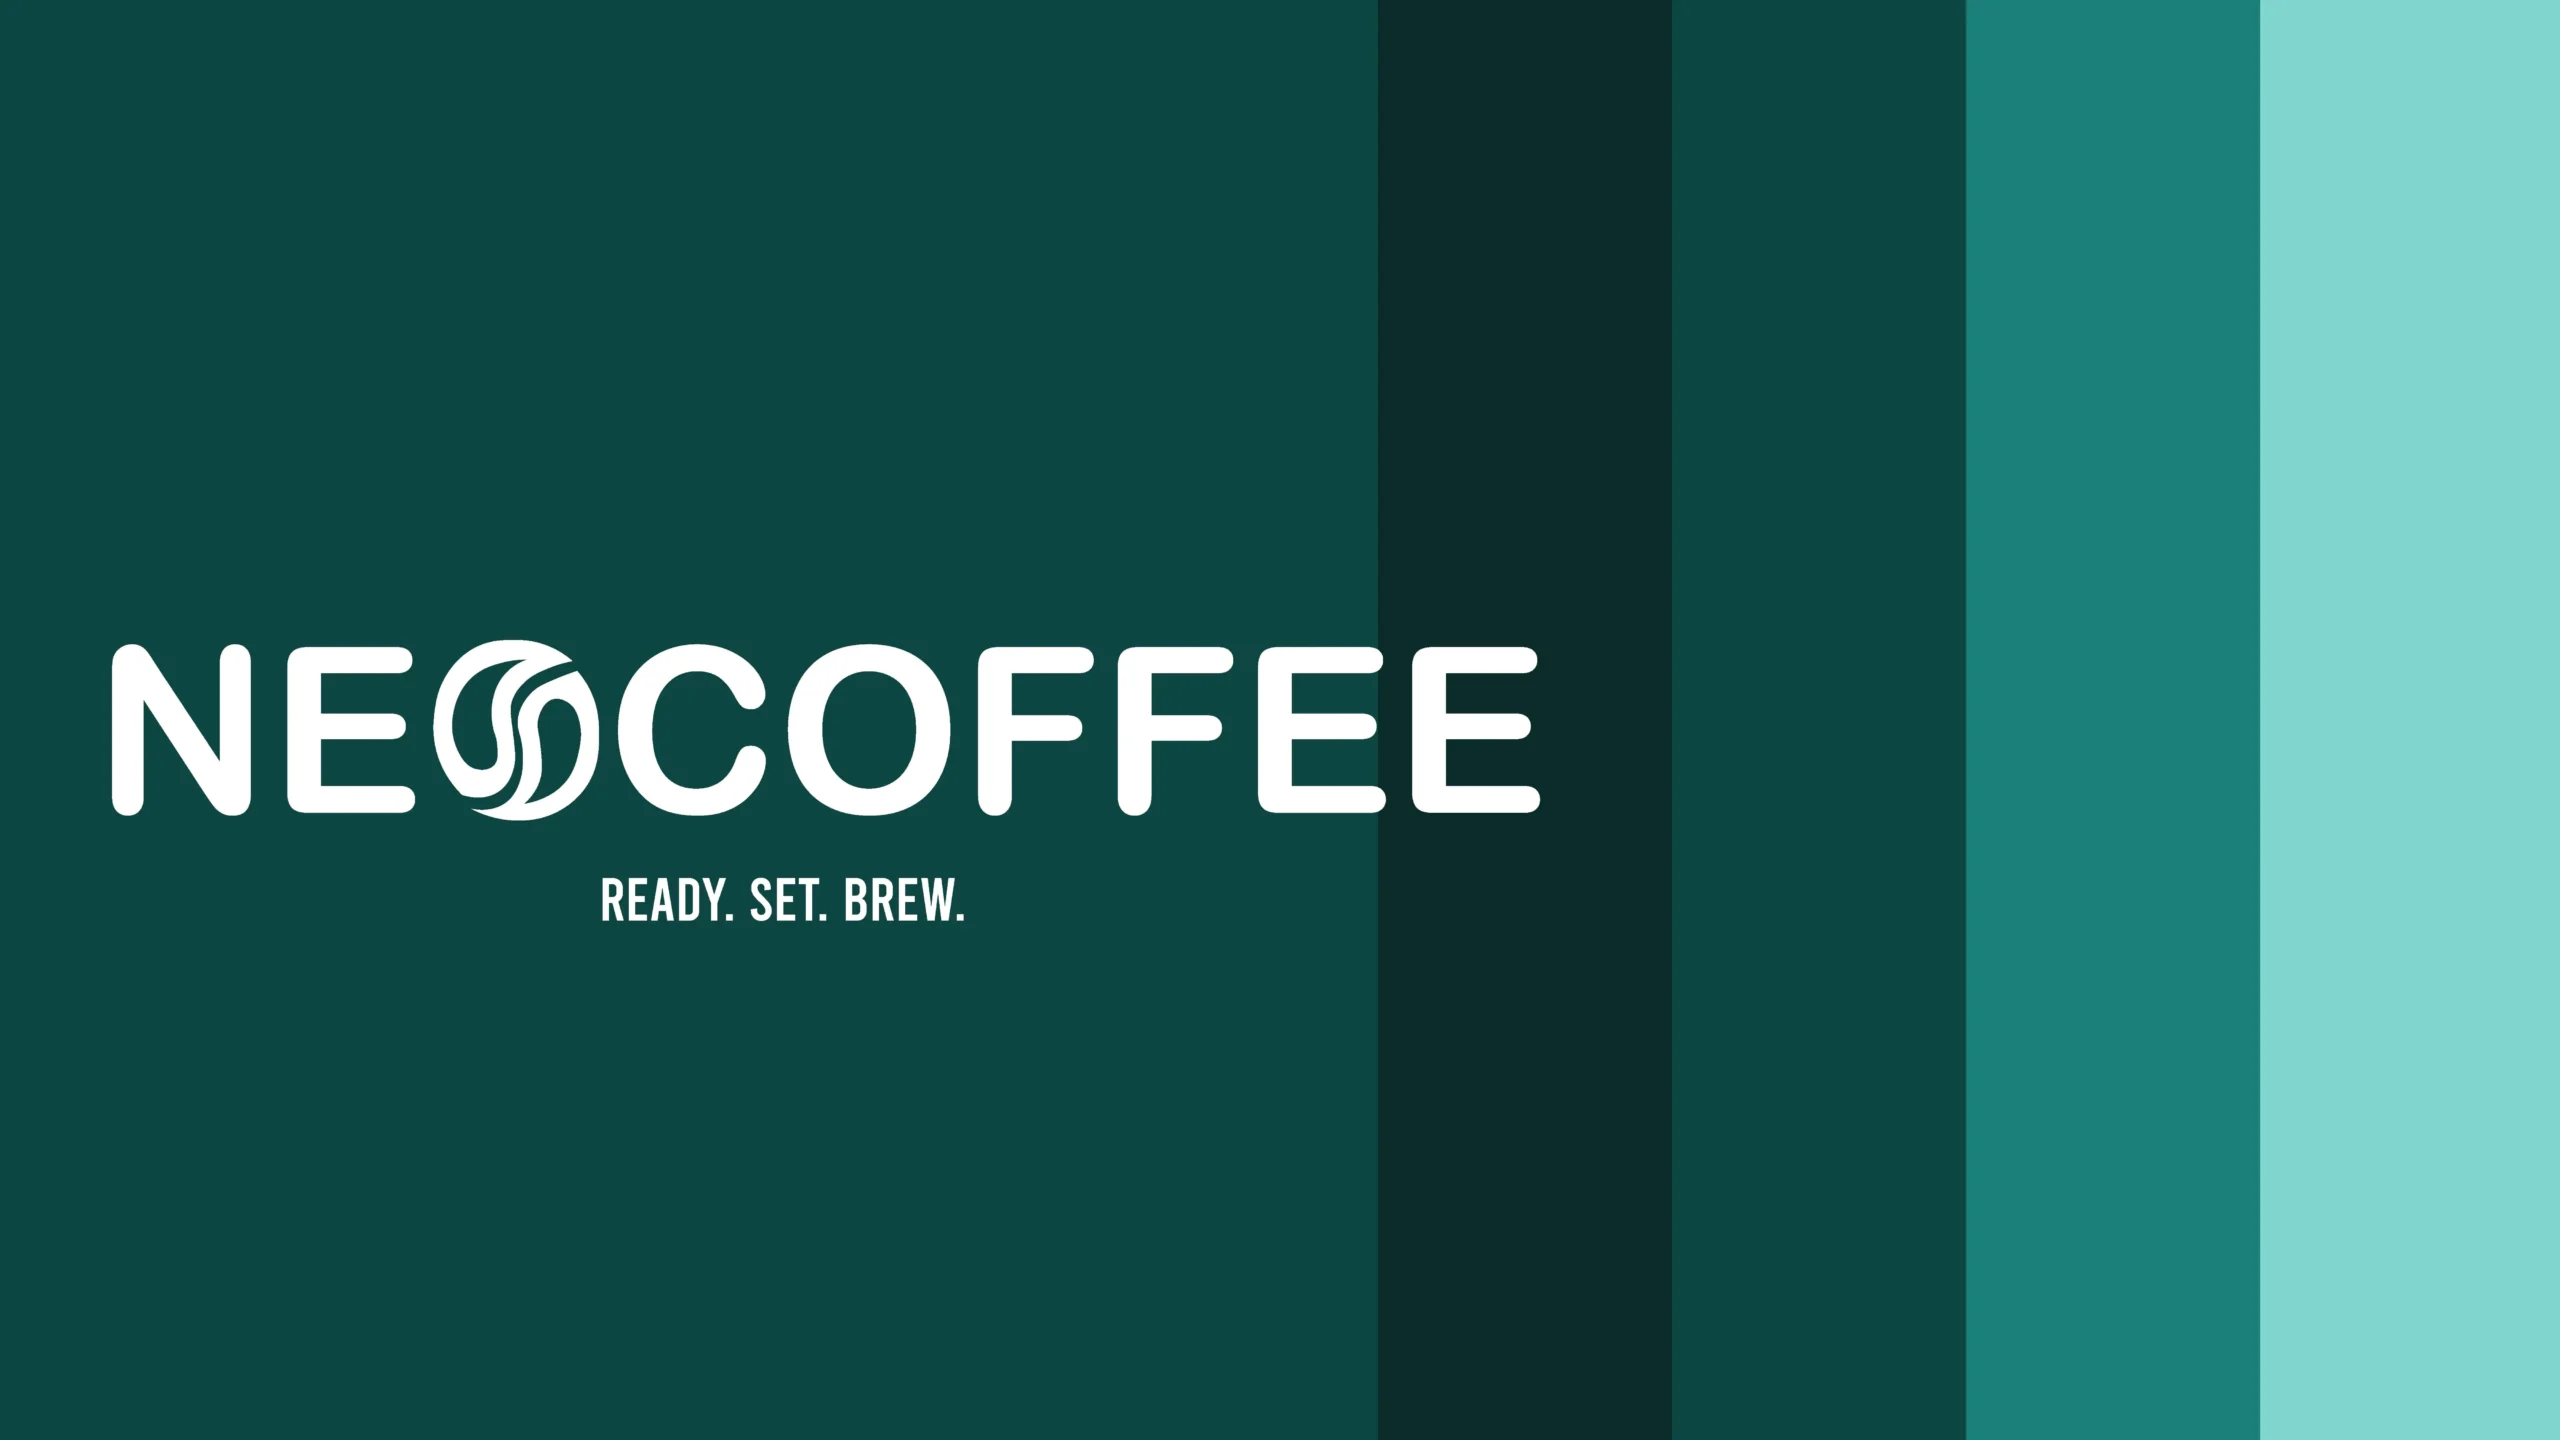 Neo Coffee Unique Brand Identity